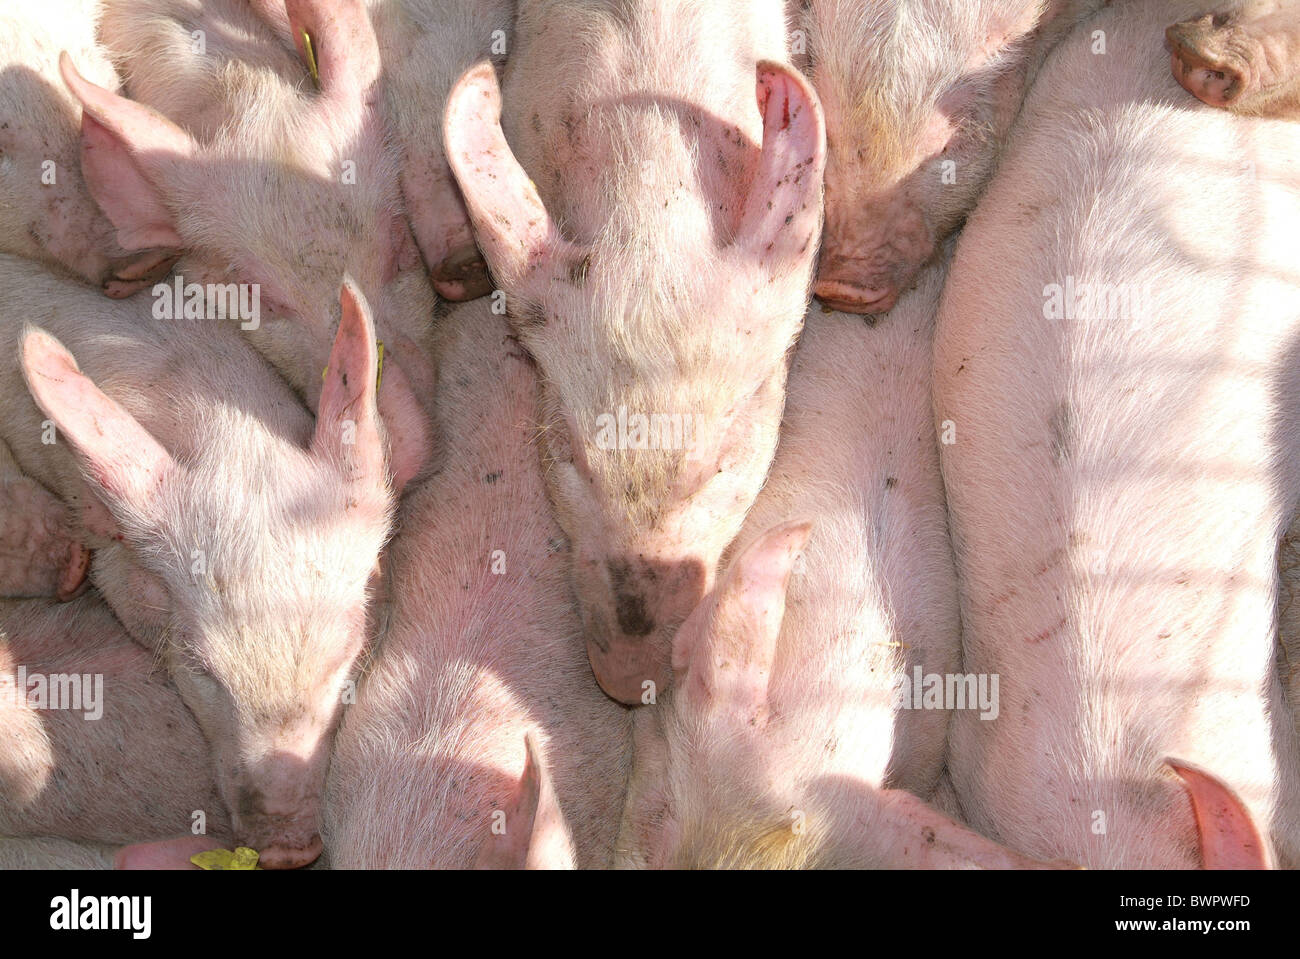 Les porcs porcelets porcelet porc bacon étroit pénurie agriculture ferme agriculture aliments des animaux reproducteurs de pi Banque D'Images